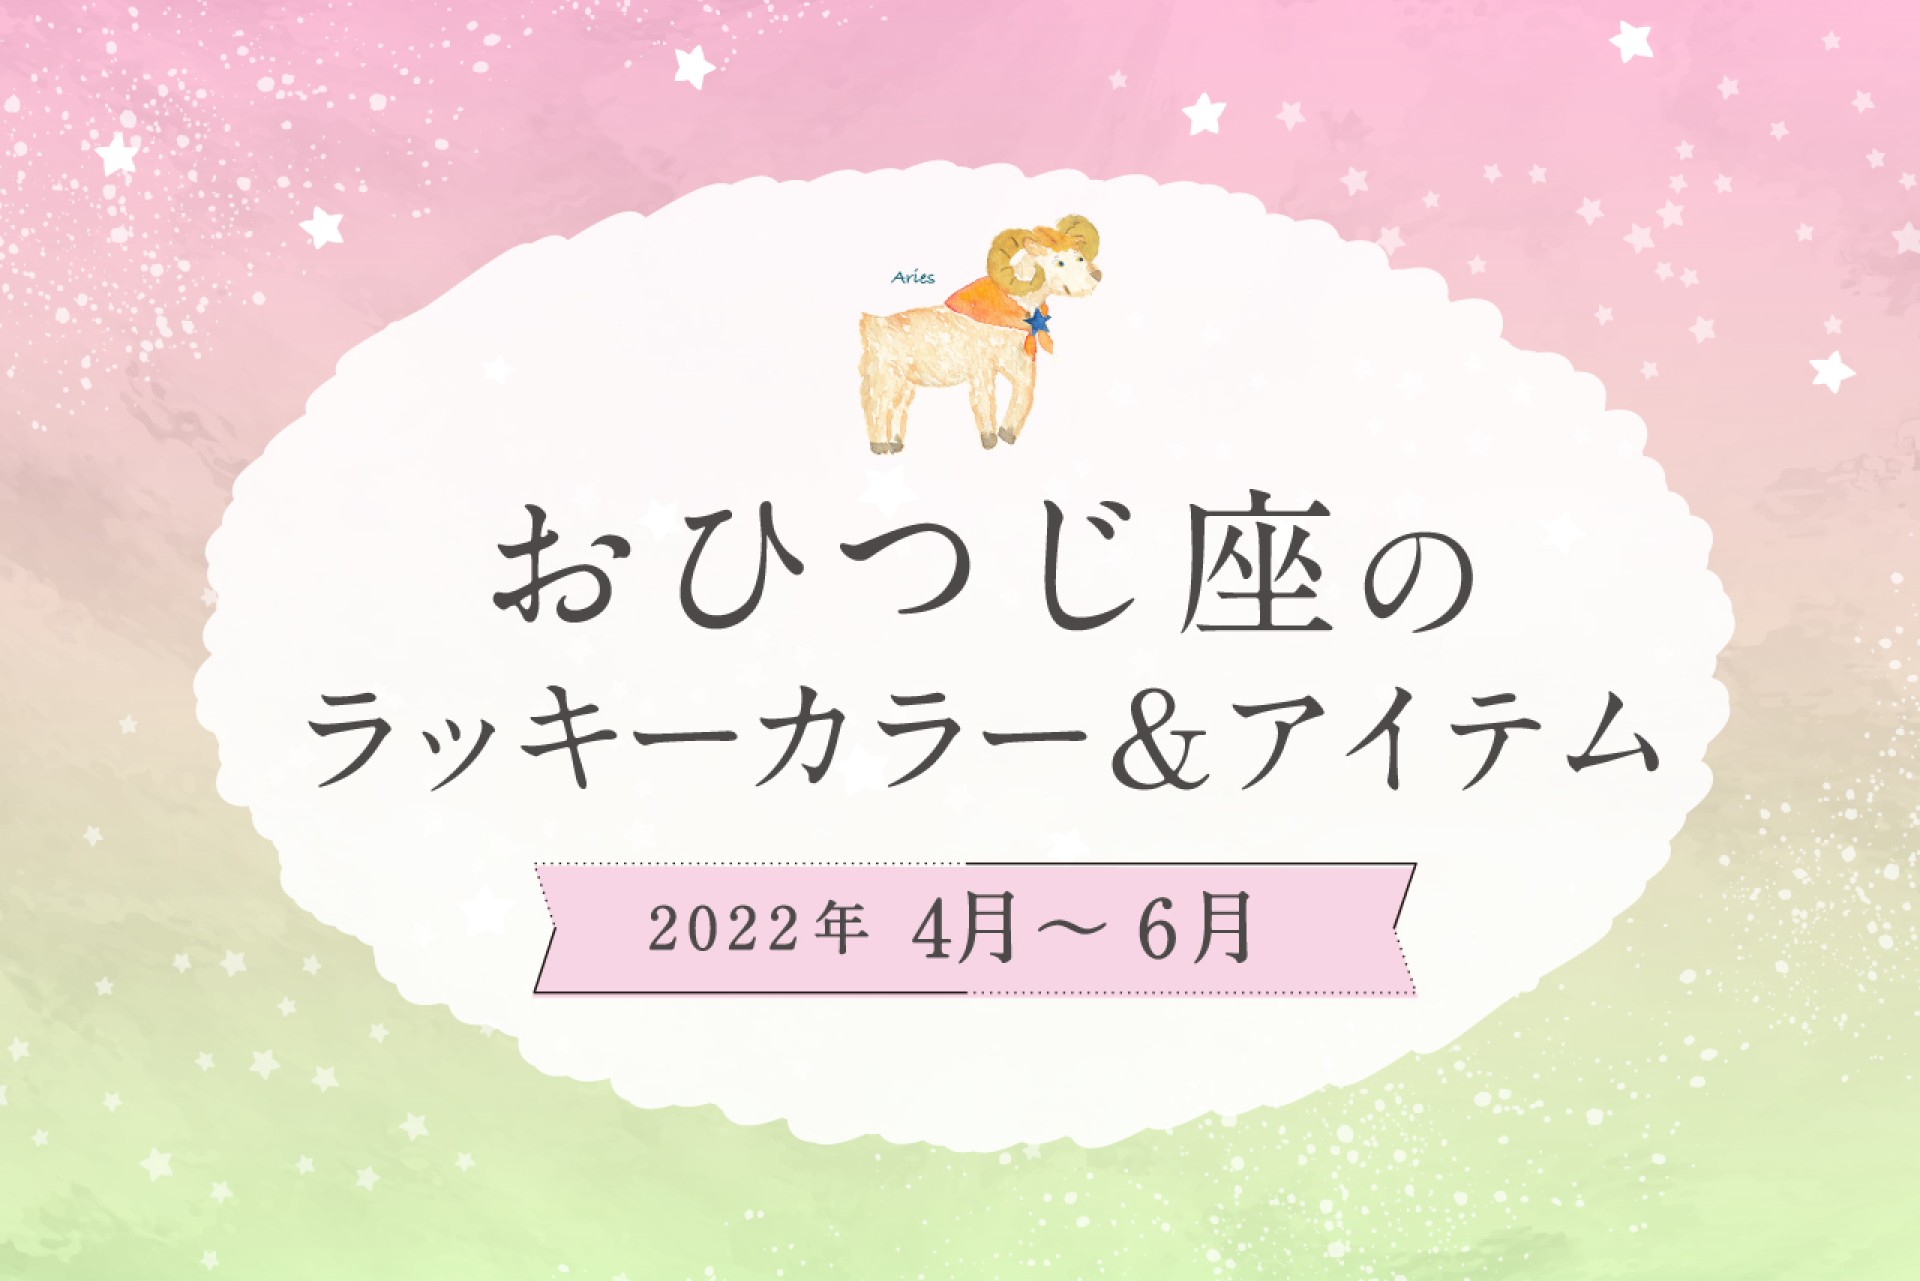 おひつじ座のラッキーカラーとラッキーアイテム【2022年4月・5月・6月】